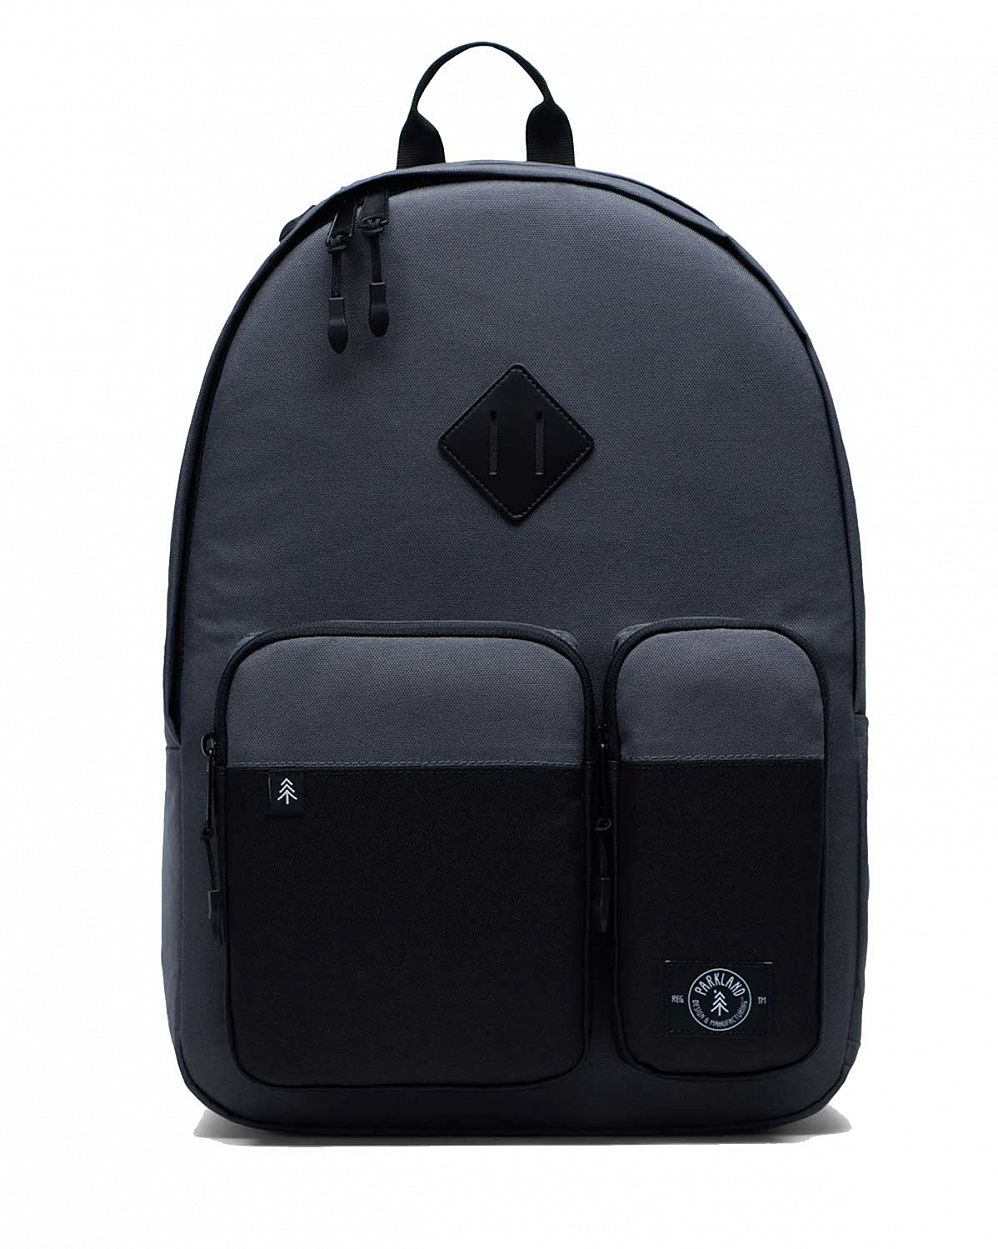 Рюкзак водонепроницаемый для 15 ноутбука Parkland Academy SKYLINE отзывы